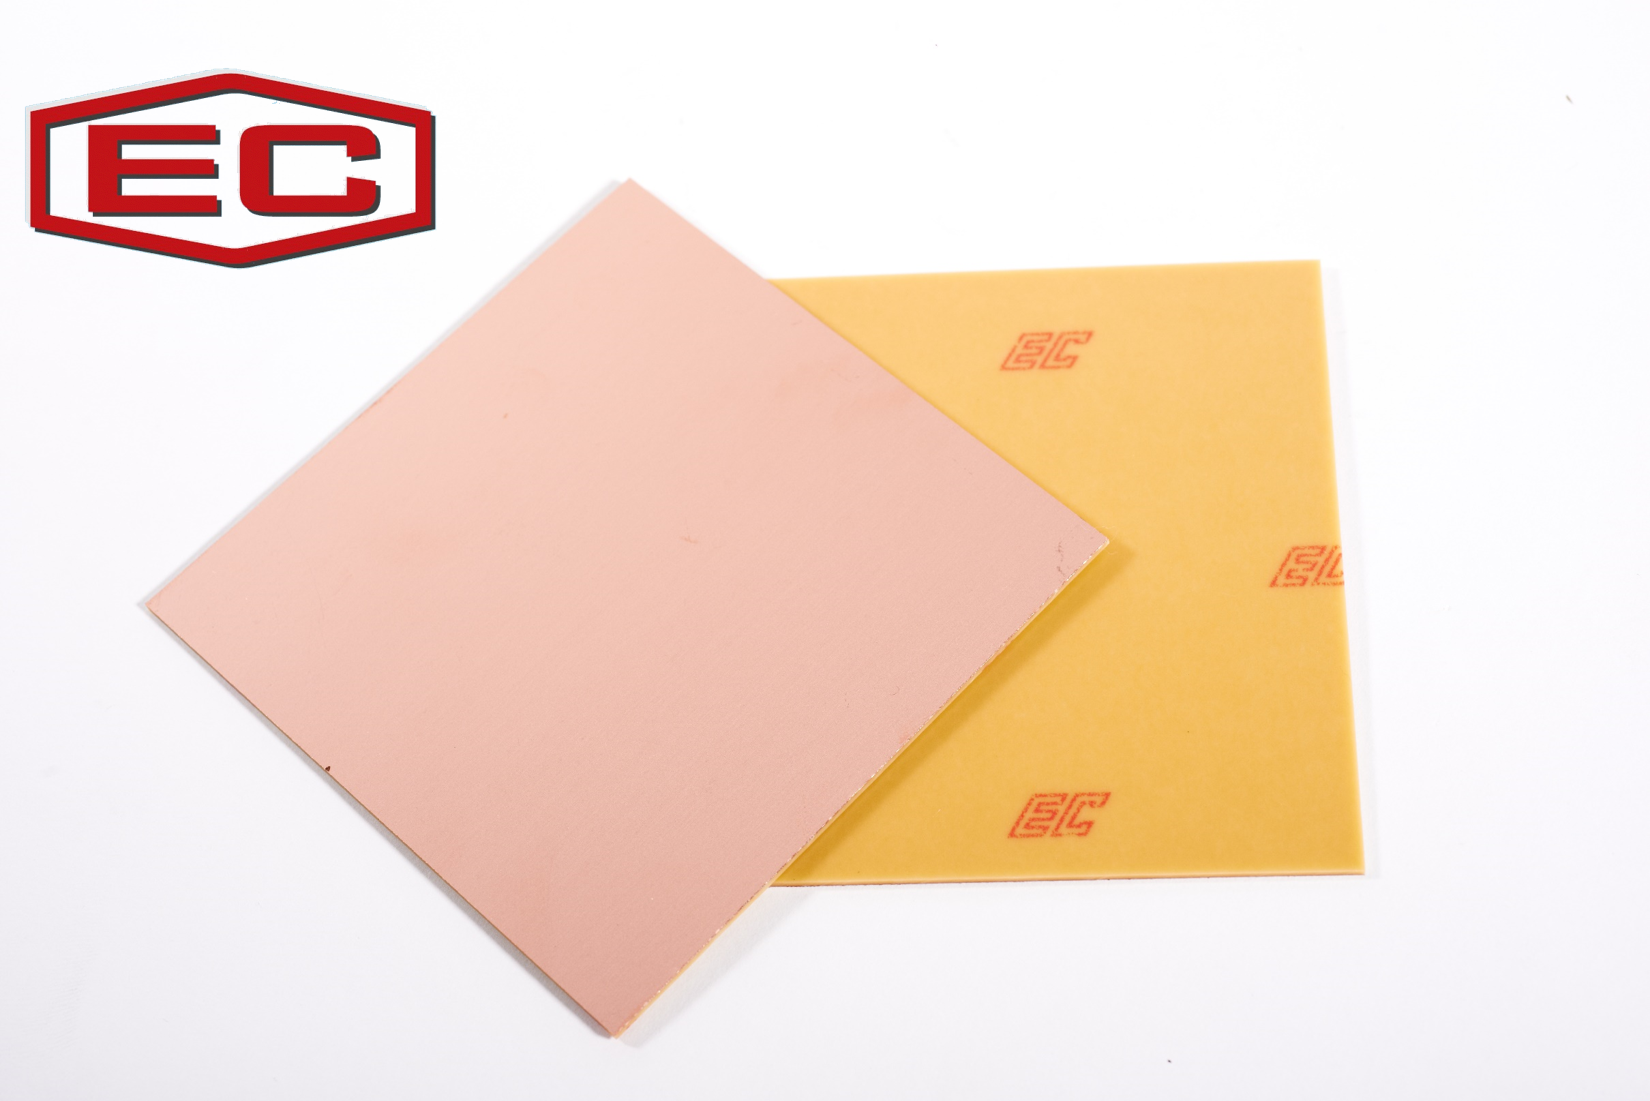 印刷電路板材料- 酚醛紙基覆銅箔基板